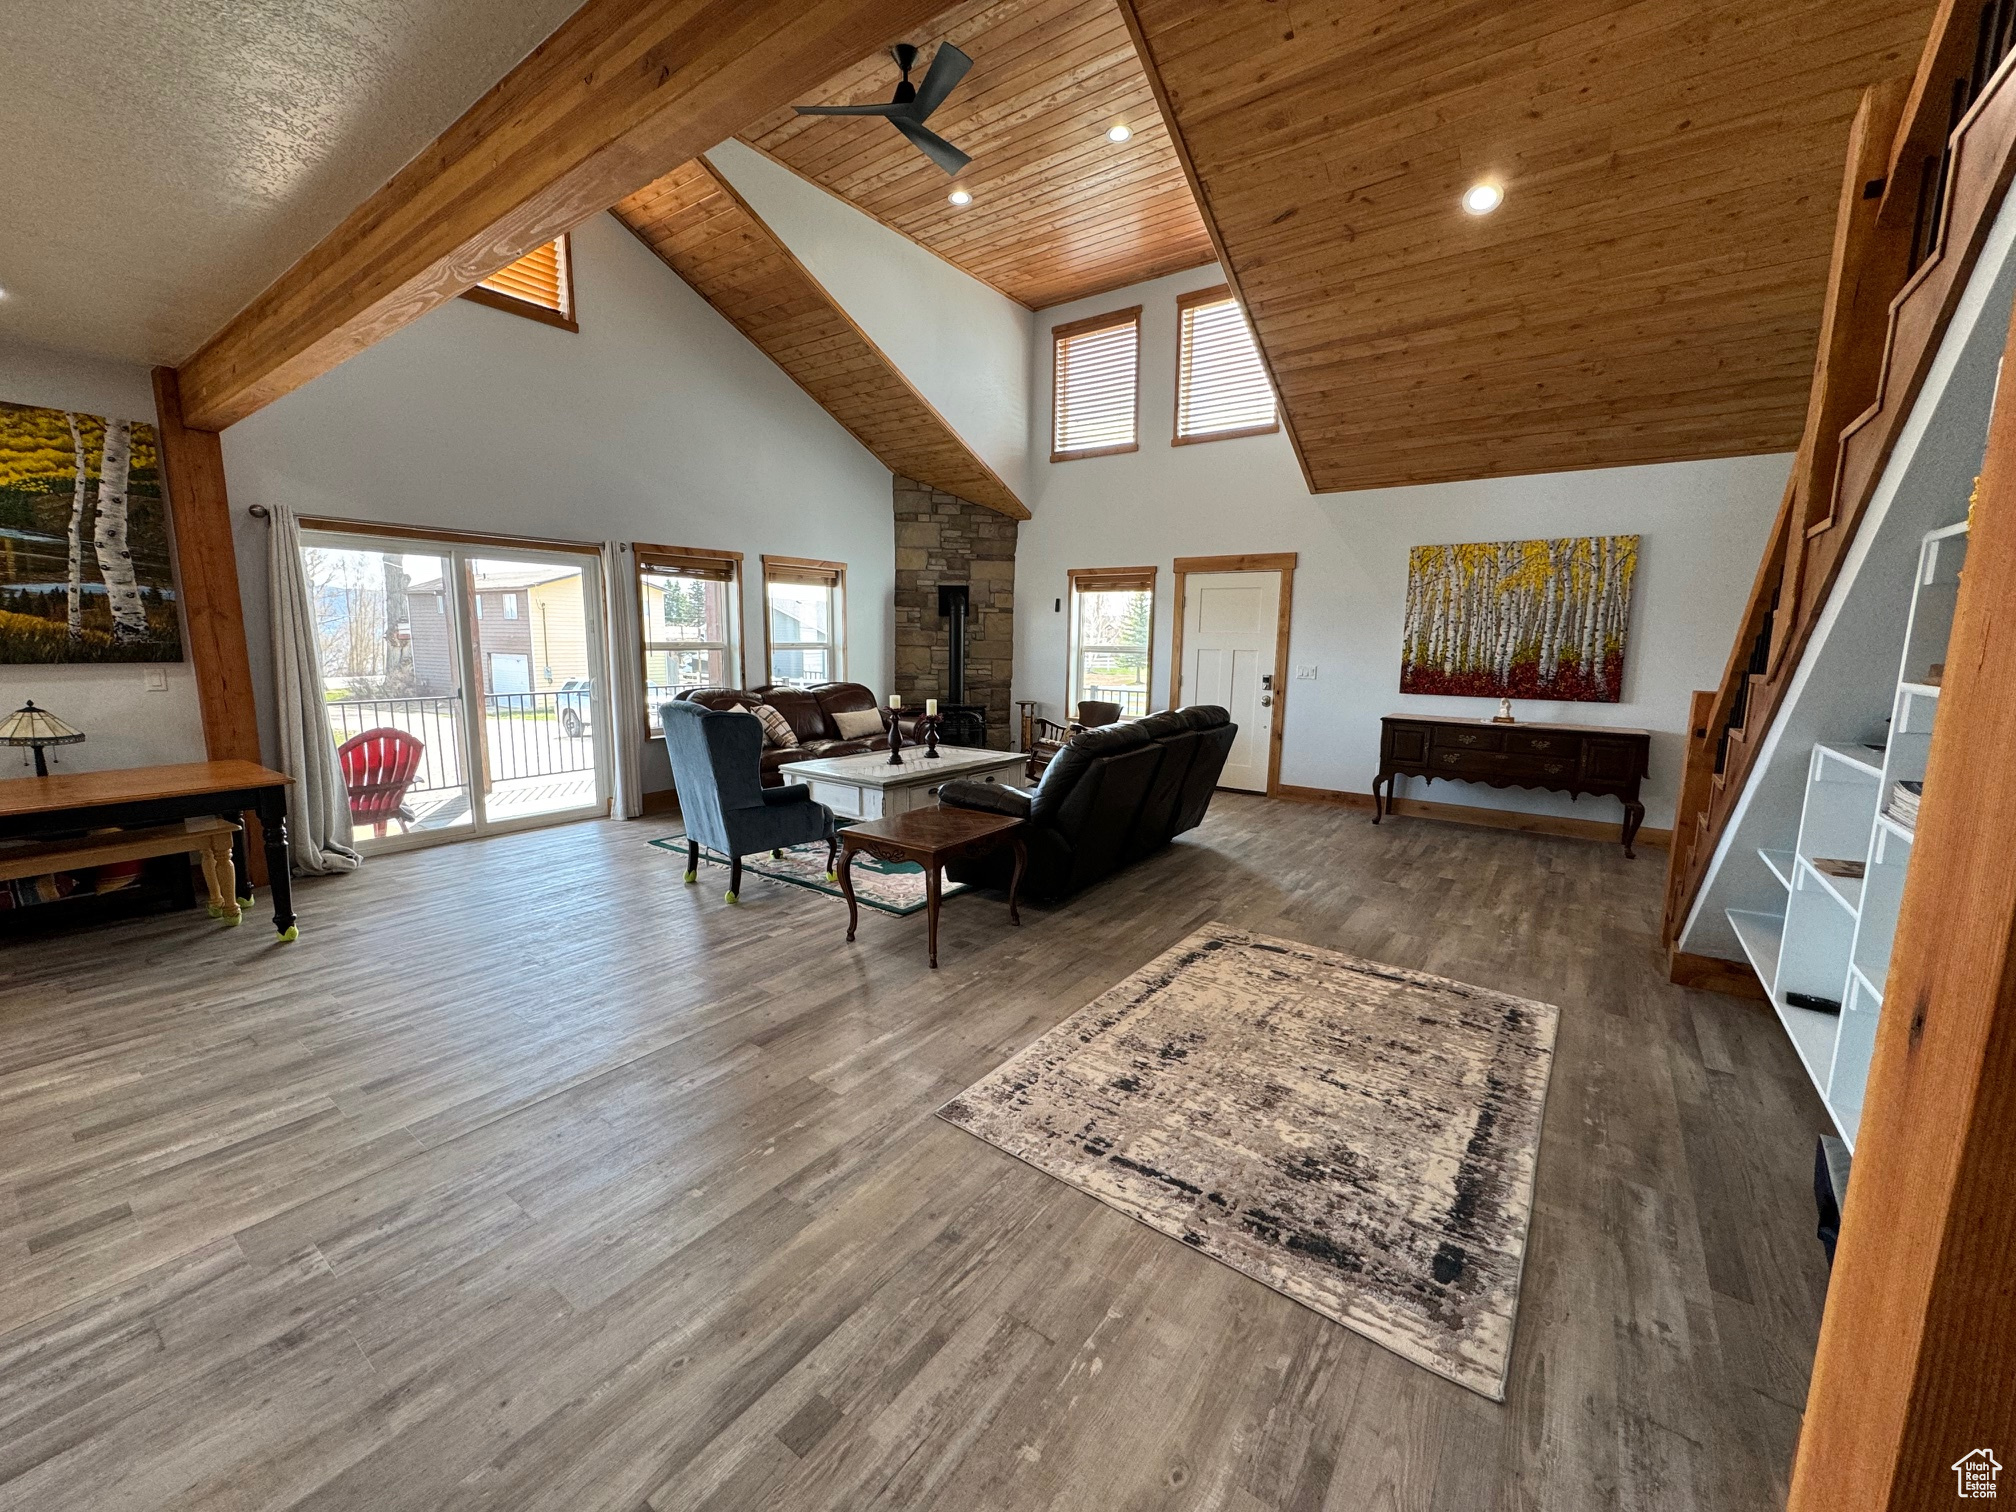 Living room featuring LVP flooring, high vaulted ceiling, wooden ceiling, beam ceiling, and ceiling fan